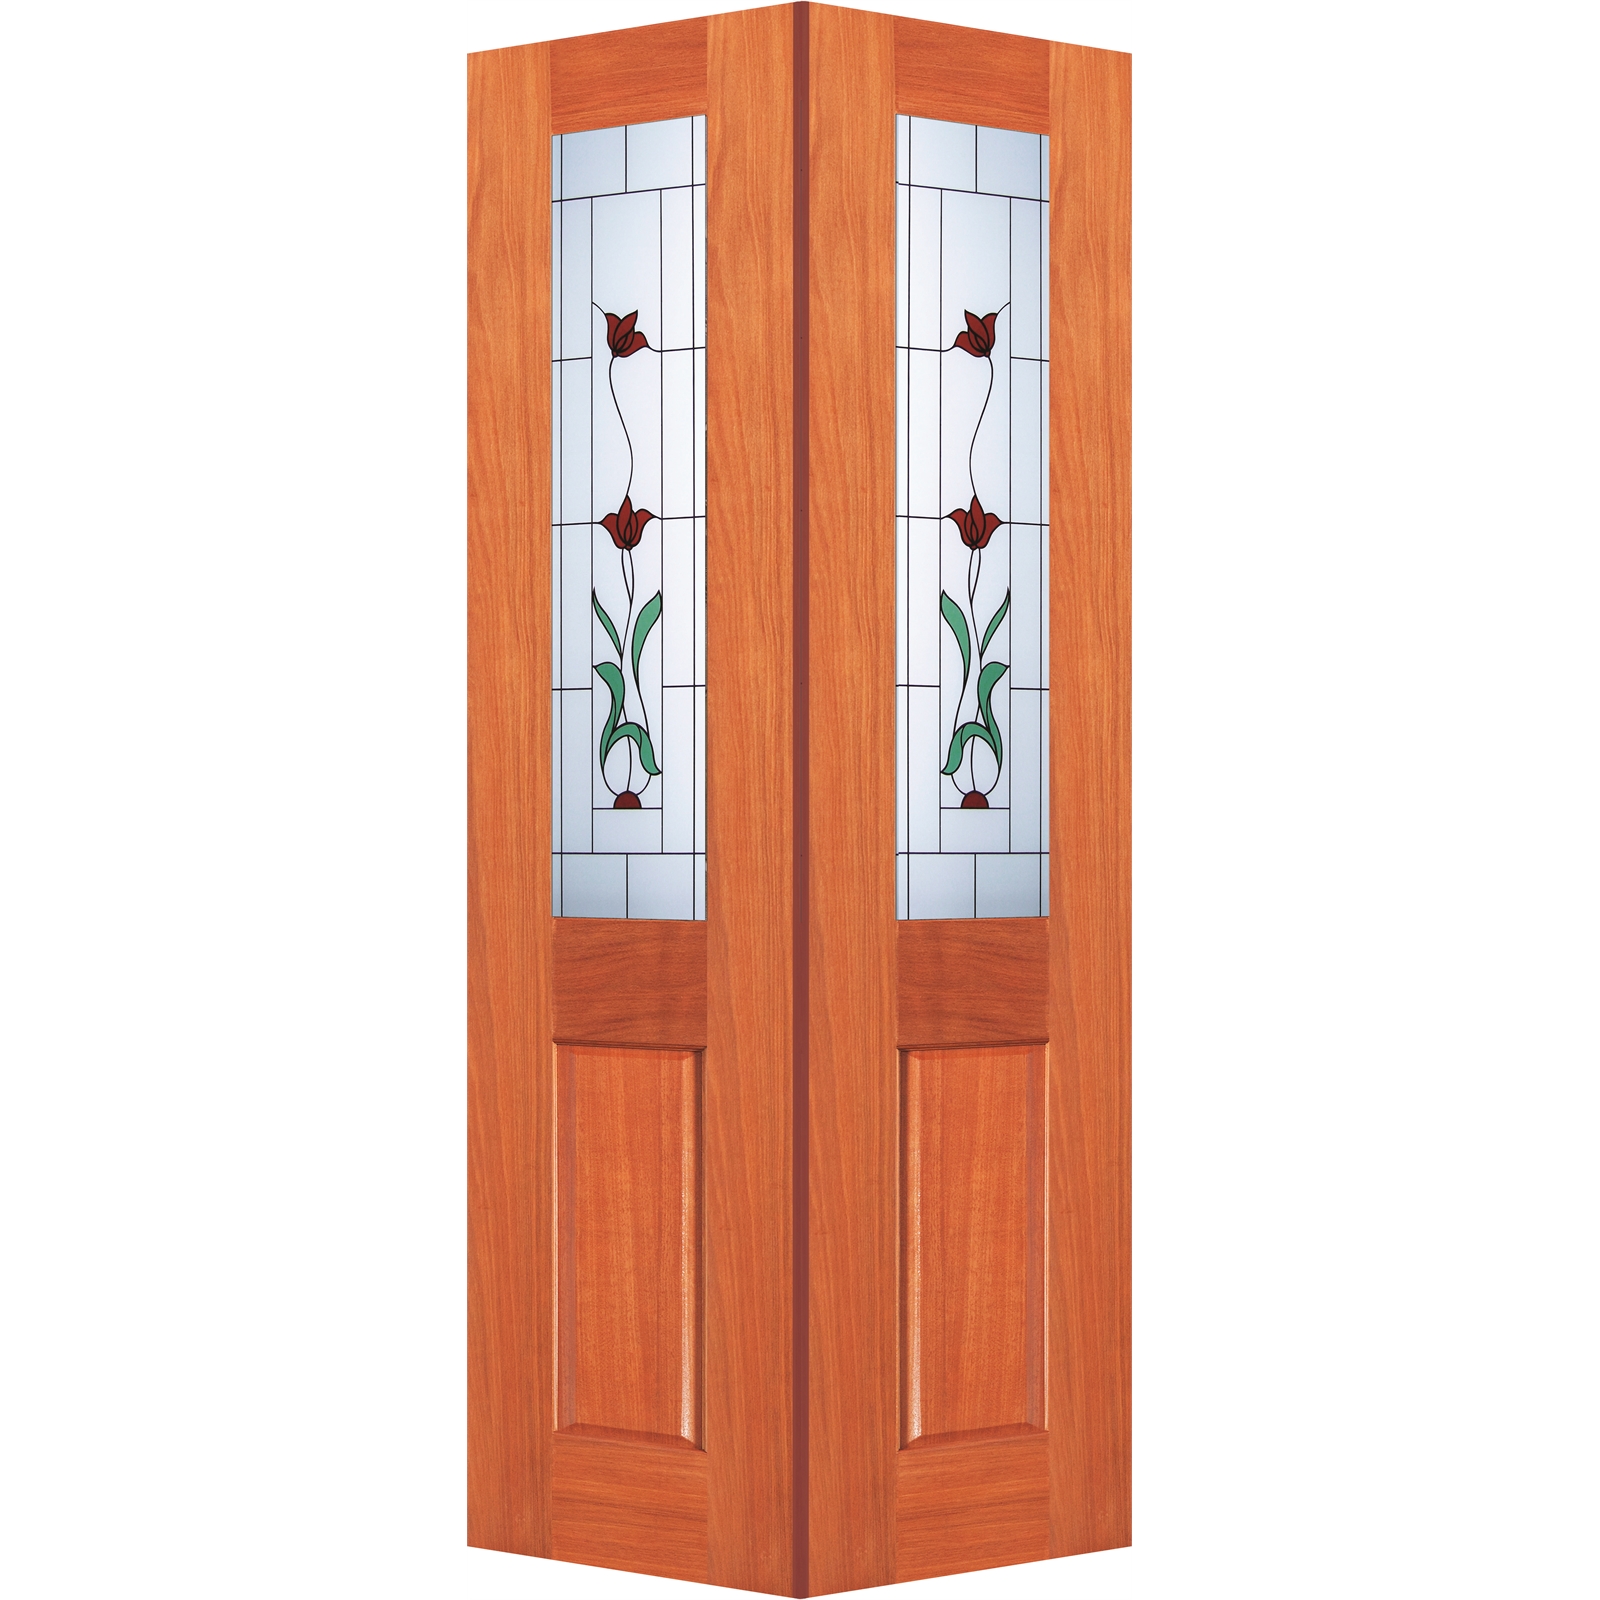 Woodcraft Doors 2040 x 820 x 35mm Cass Bifold Internal Door With Creeping Flower Frosted Glass